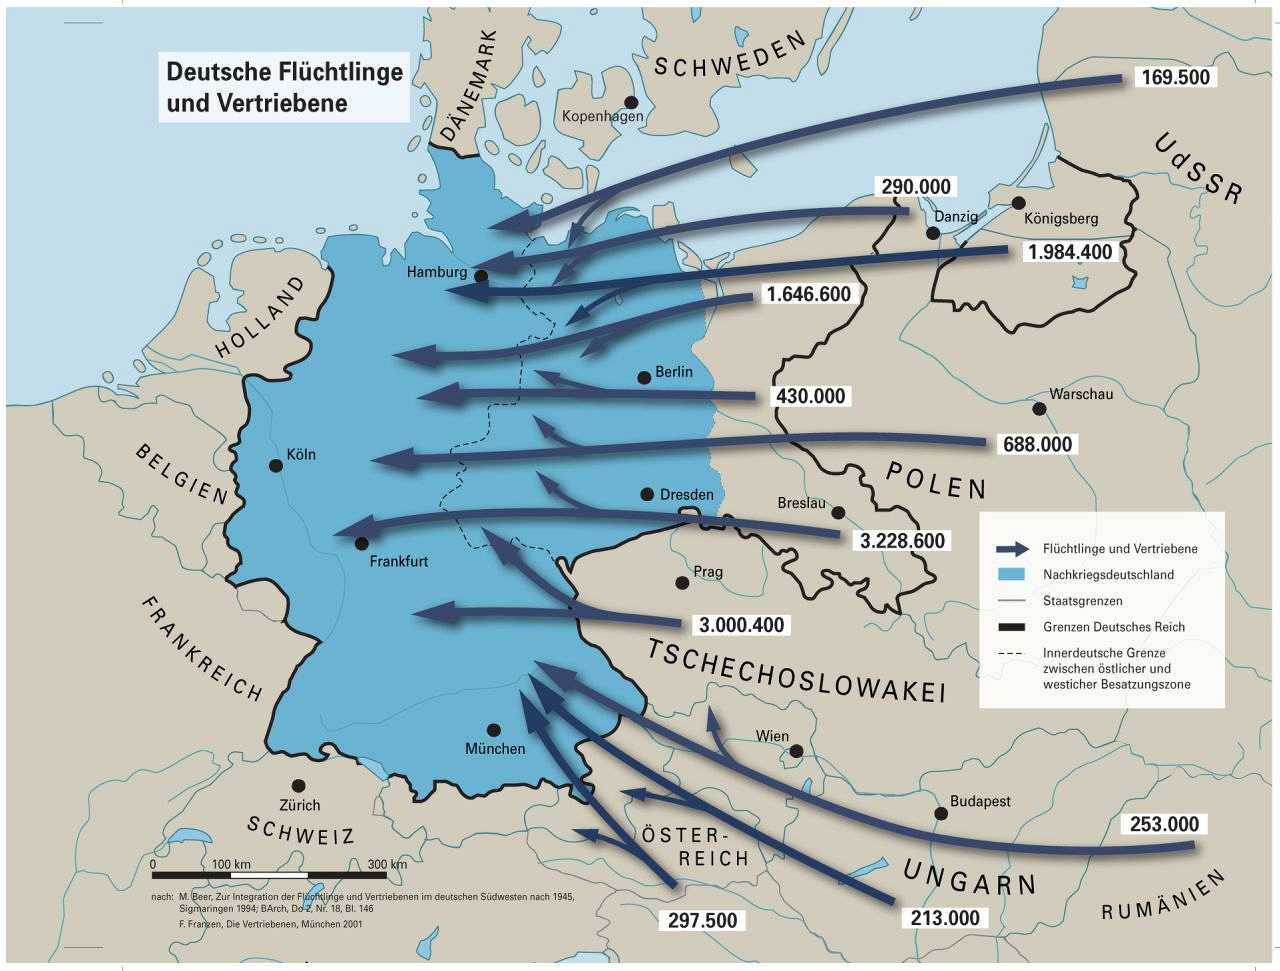 Karte mit Herkunft und Zahl der deutschen Flüchtlinge und Vertriebenen, Stand 1950